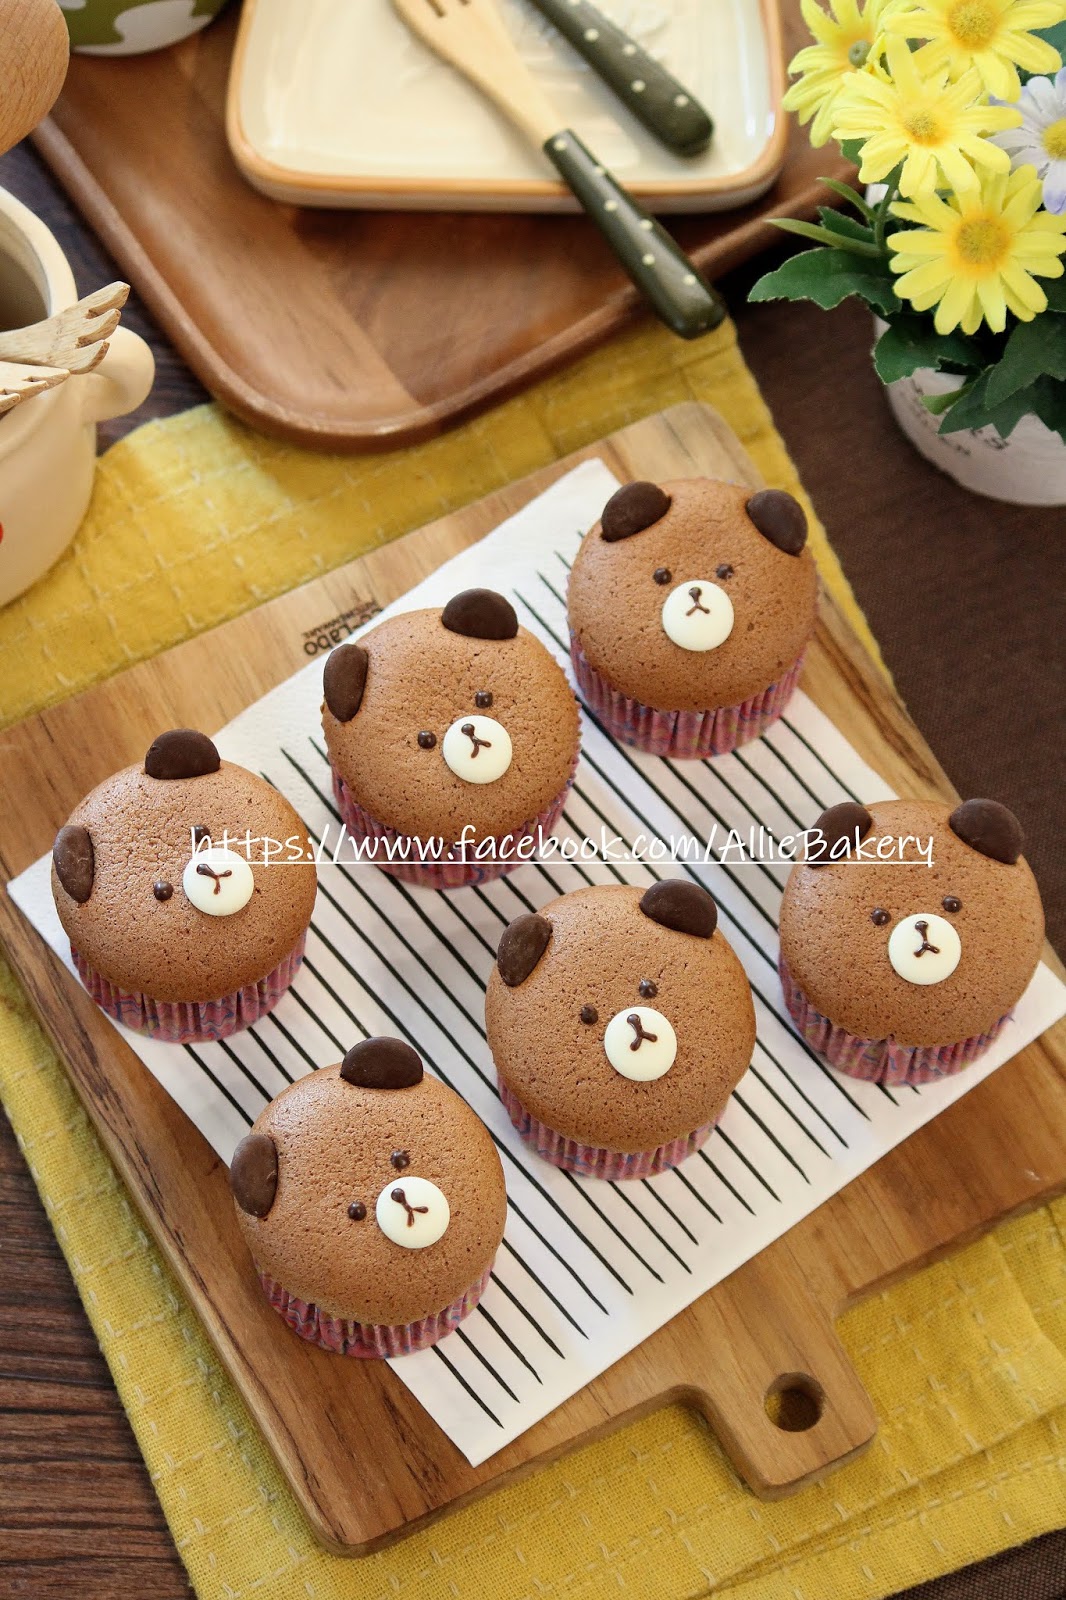 温馨小屋: 又一个小熊的生日蛋糕 - Chocolate Fudge Cake